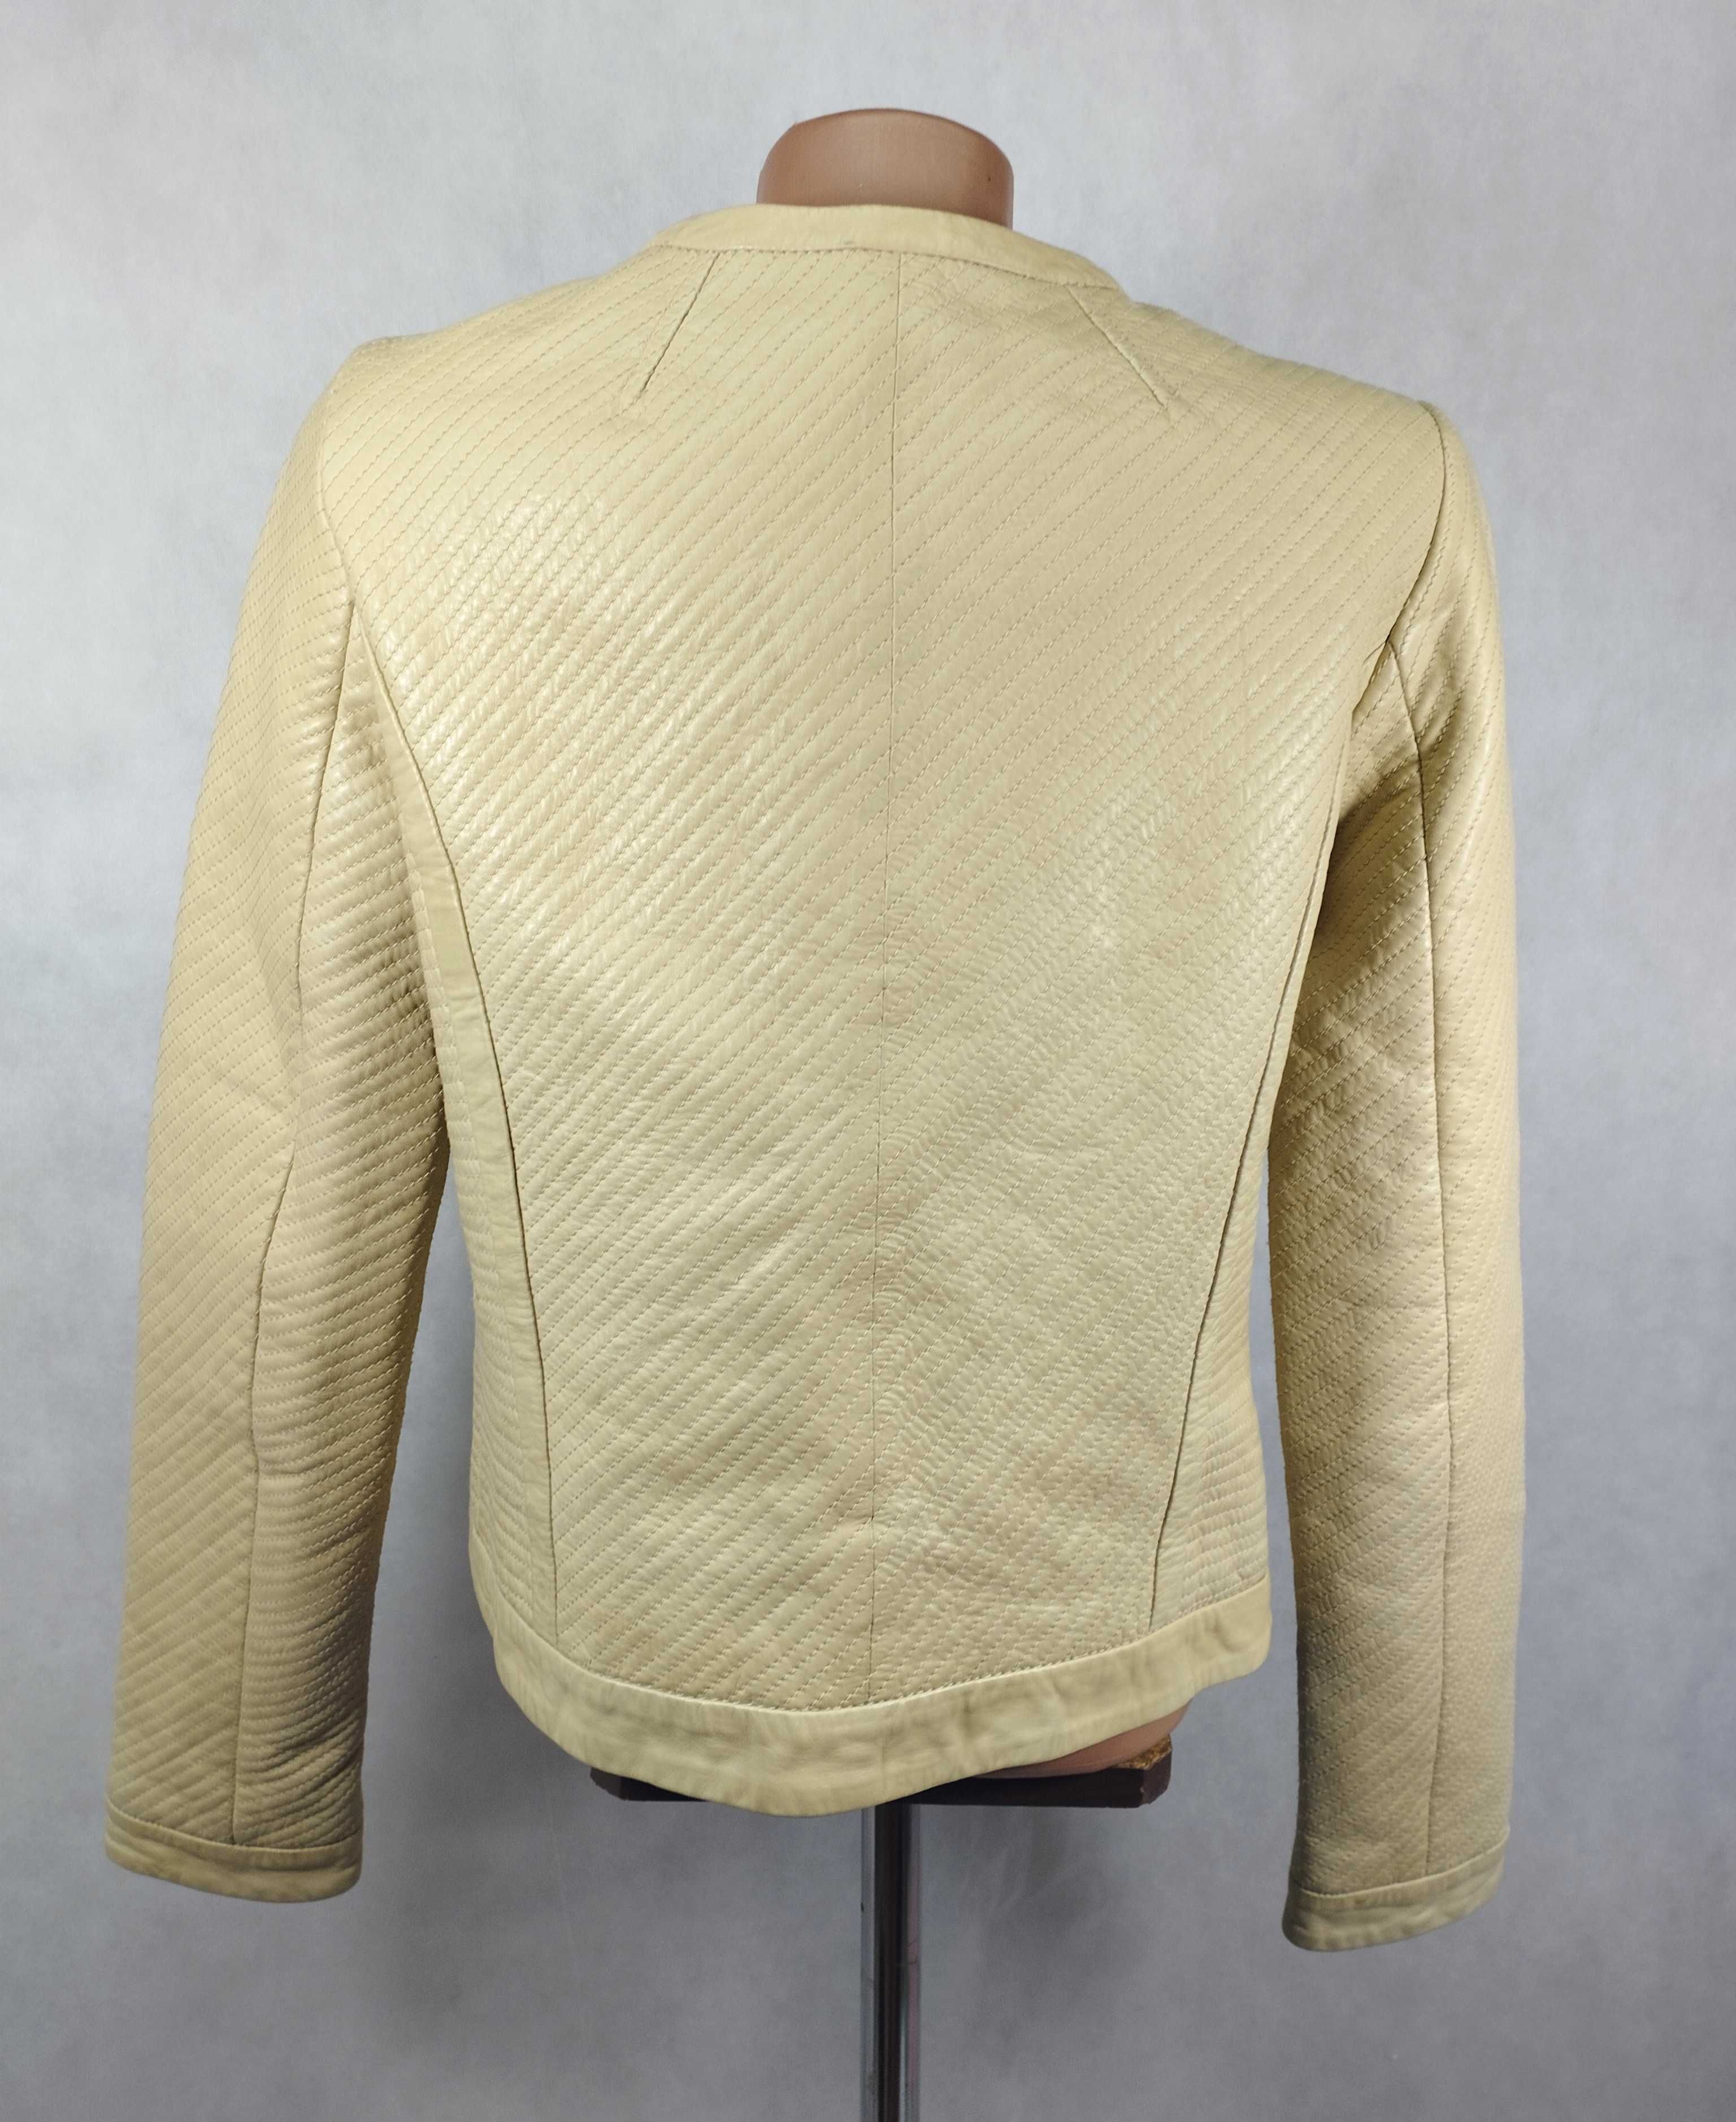 Кожаный бежевый жакет куртка на пуговицах серебро стежка
Massimo Dutti